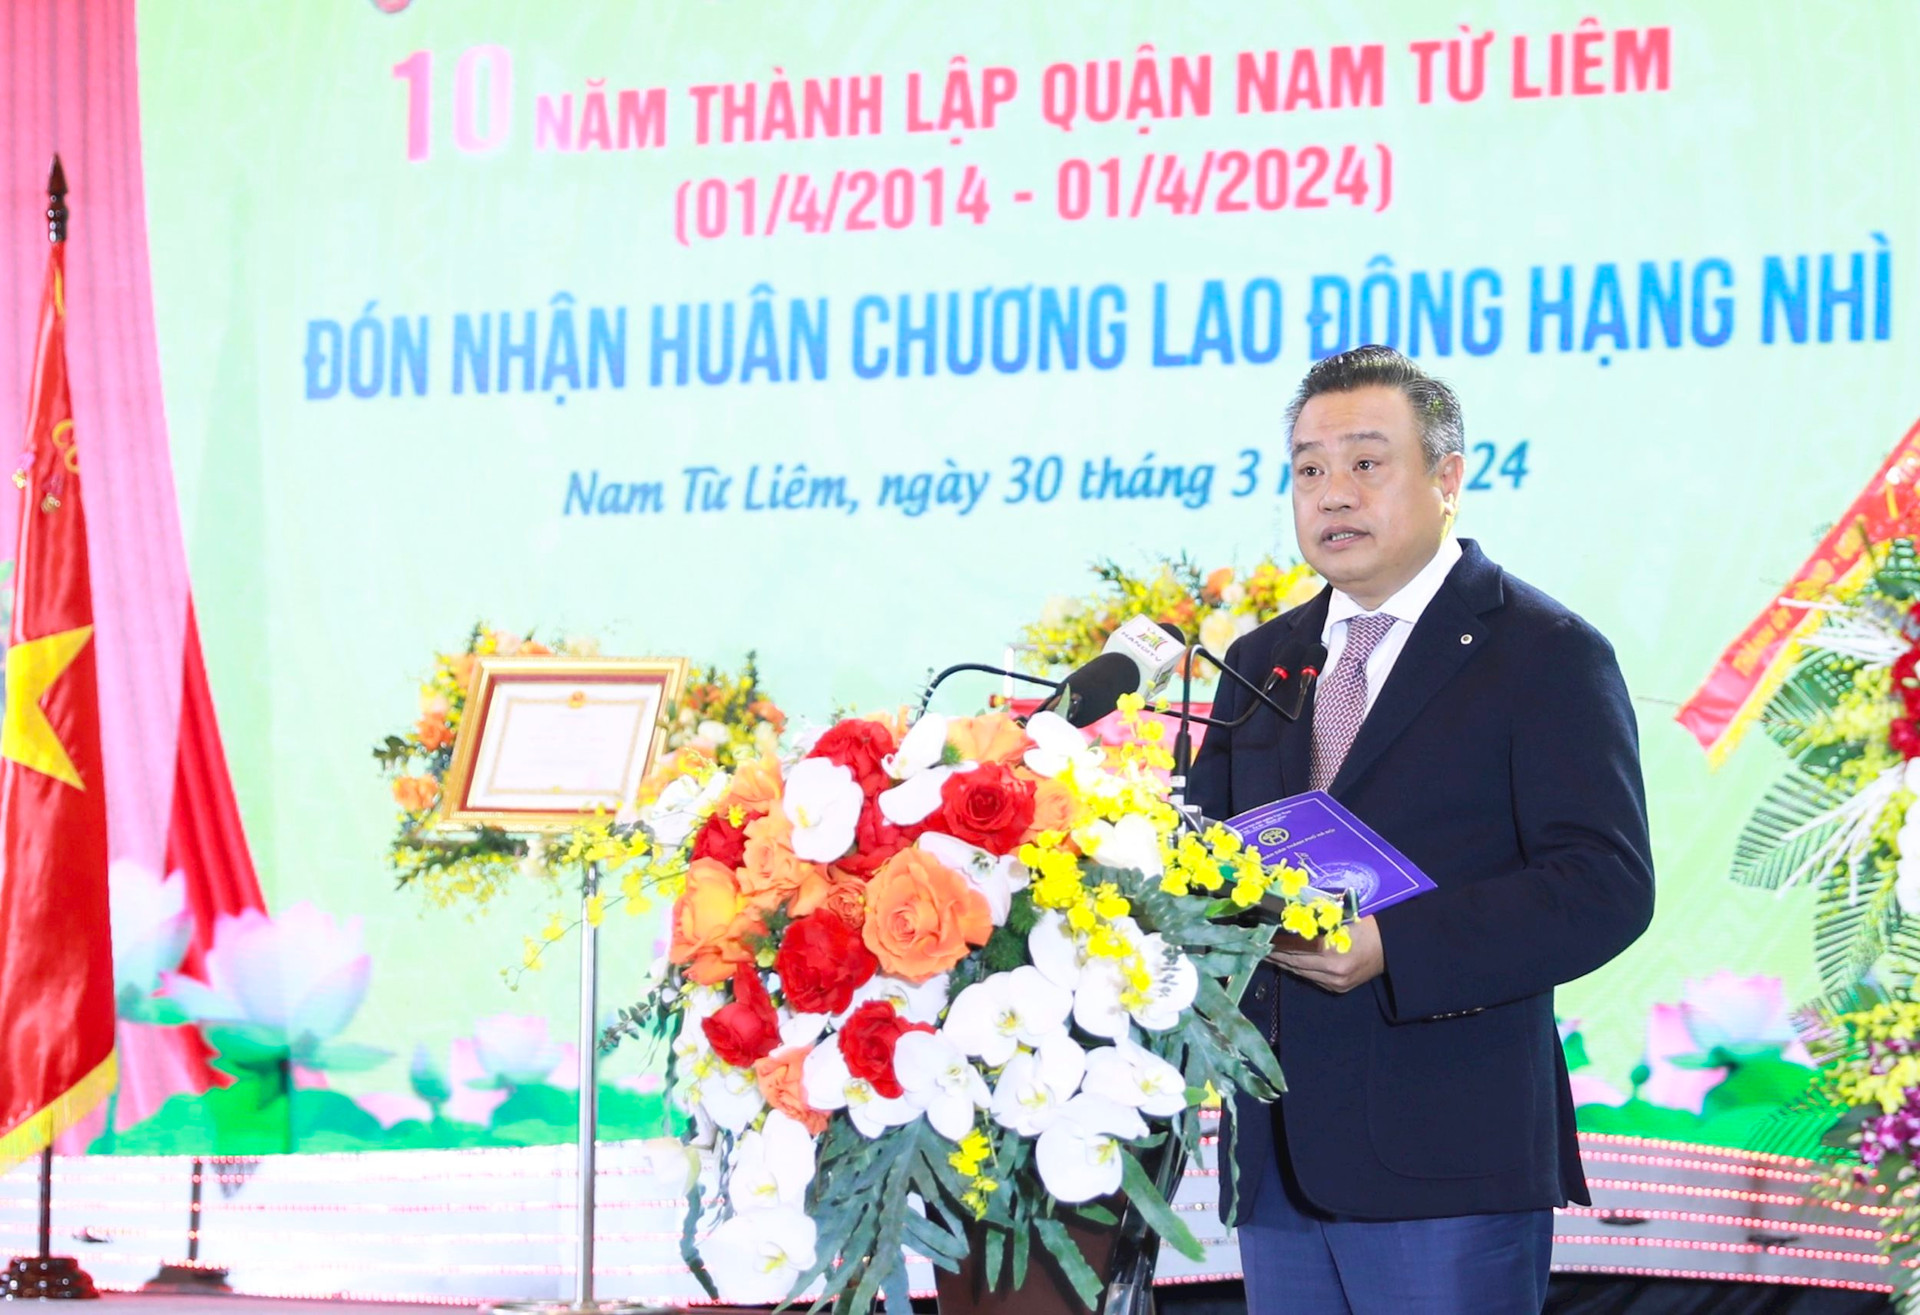 Hà Nội: Quận Nam Từ Liêm kỷ niệm 10 năm thành lập, đón nhận Huân chương Lao động hạng Nhì- Ảnh 3.